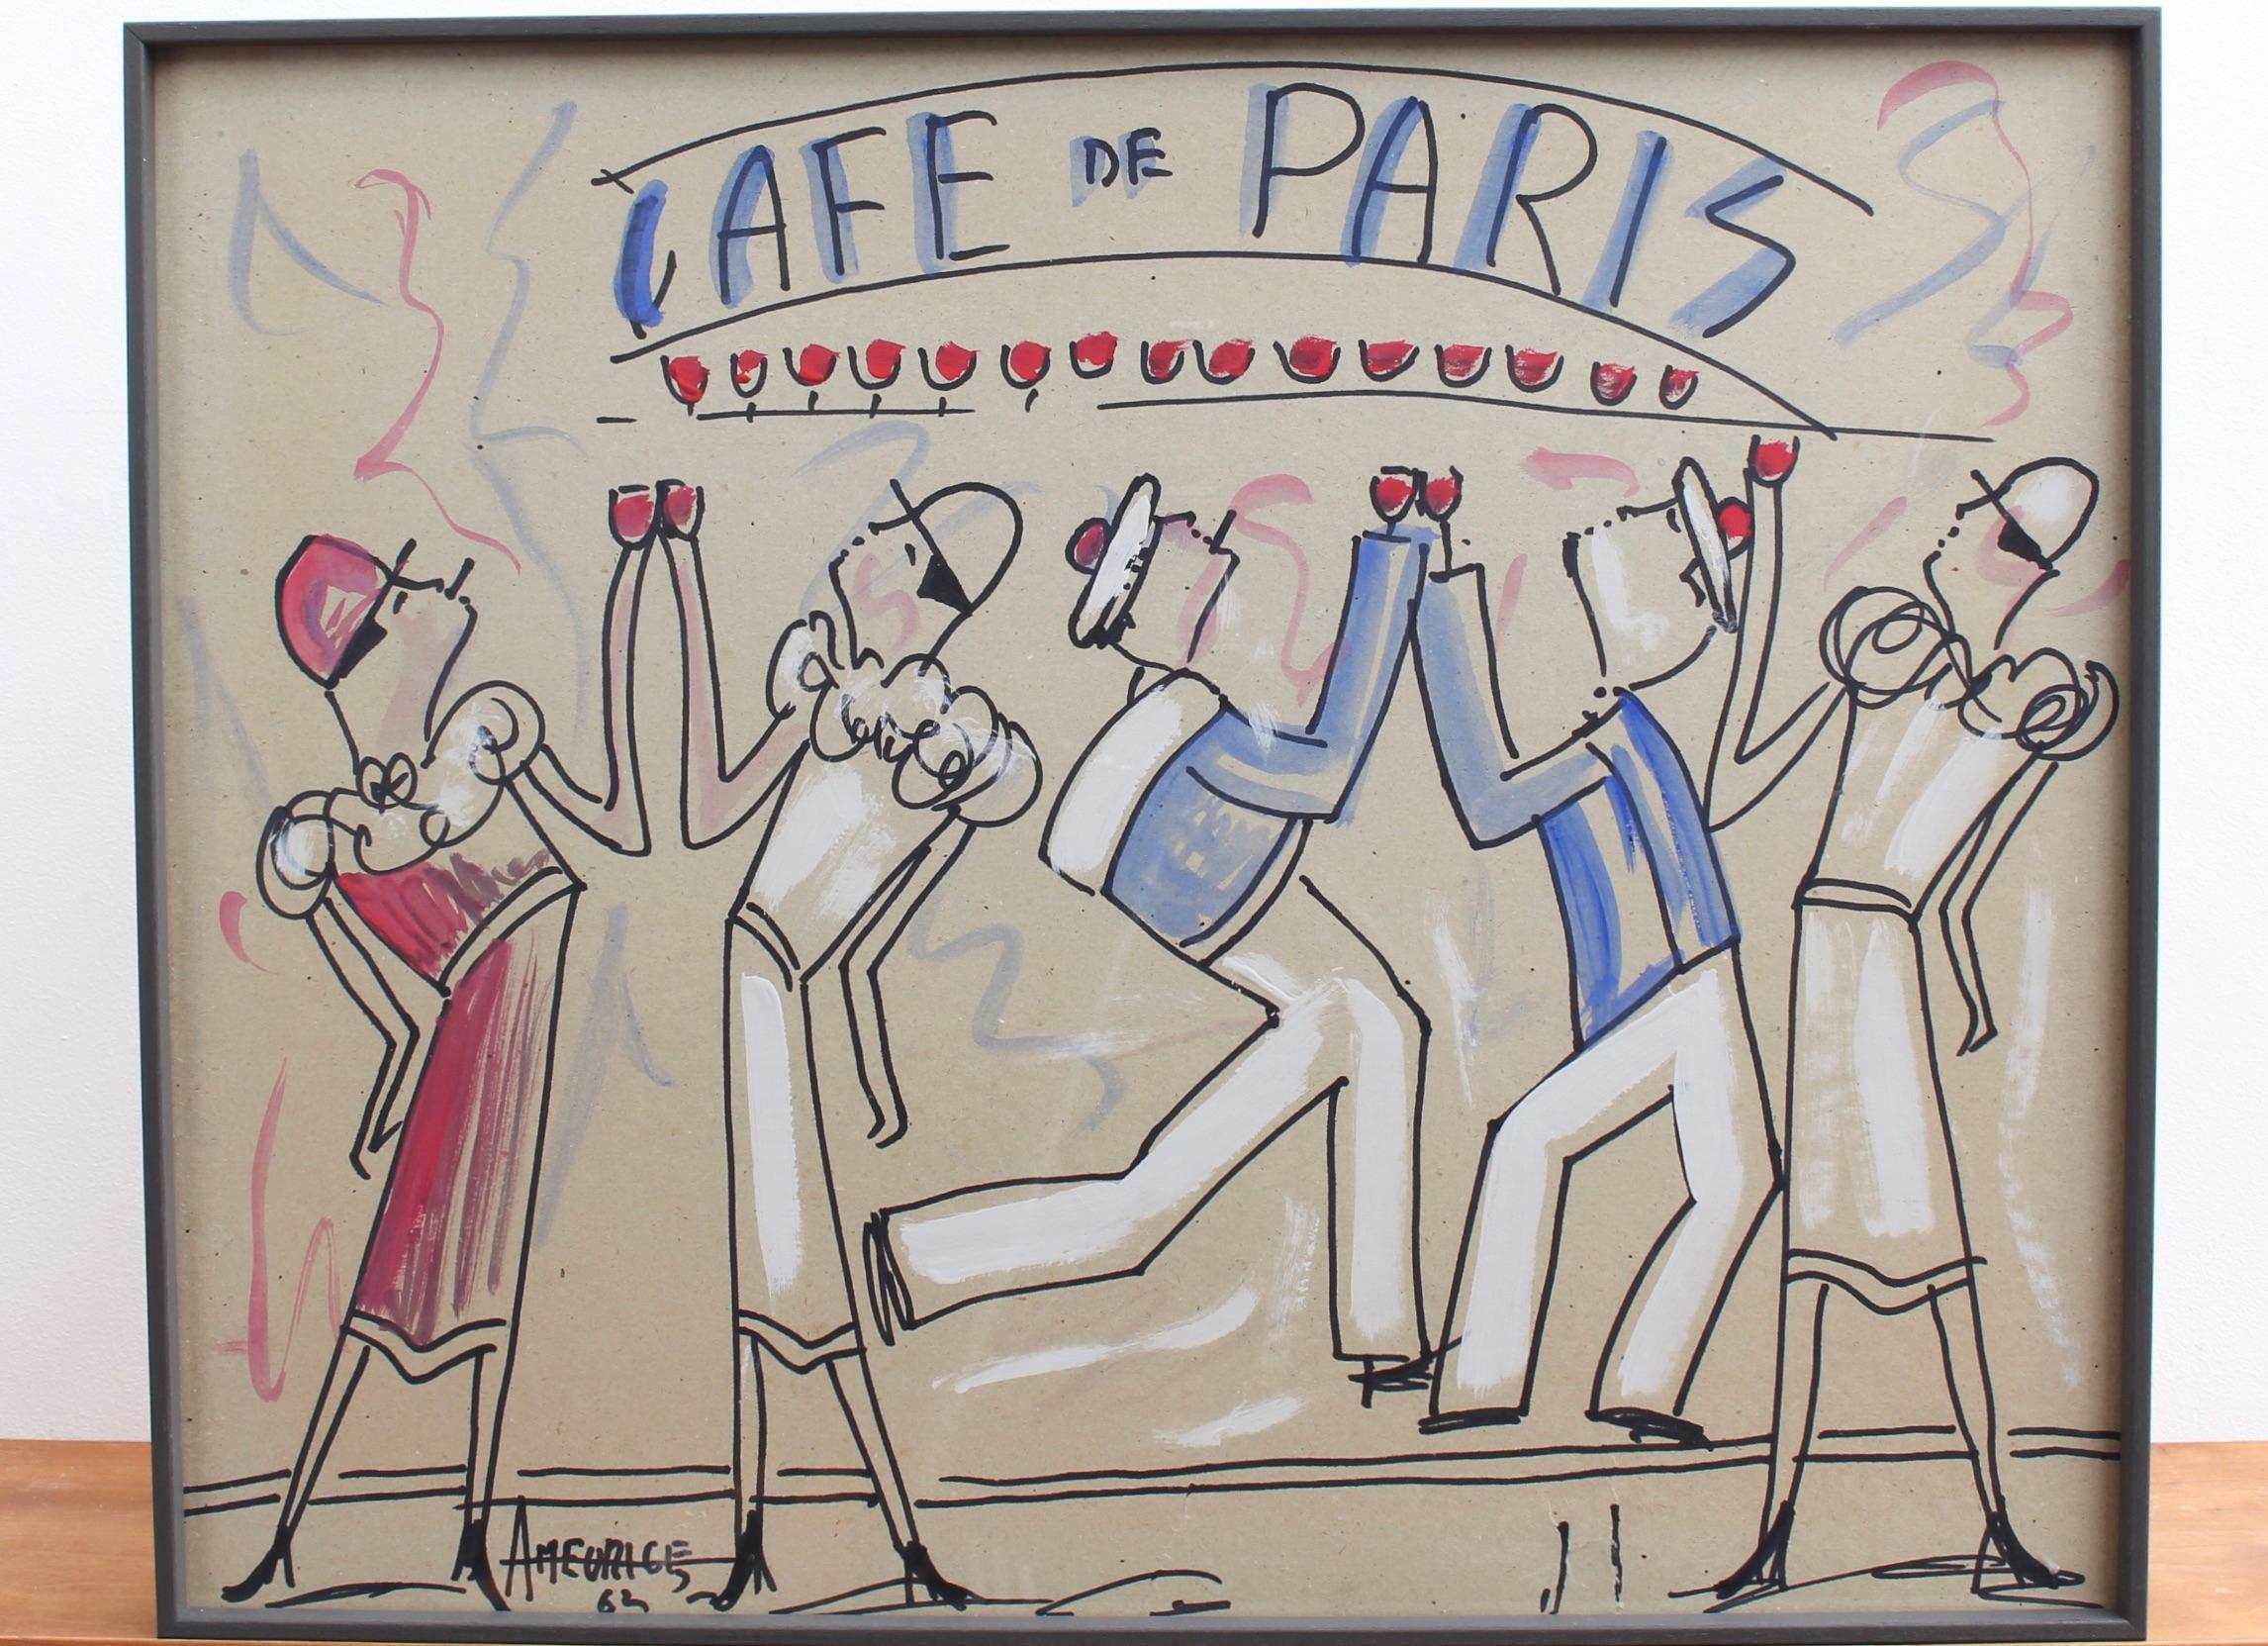 Café de Paris - Modern Painting by André Meurice